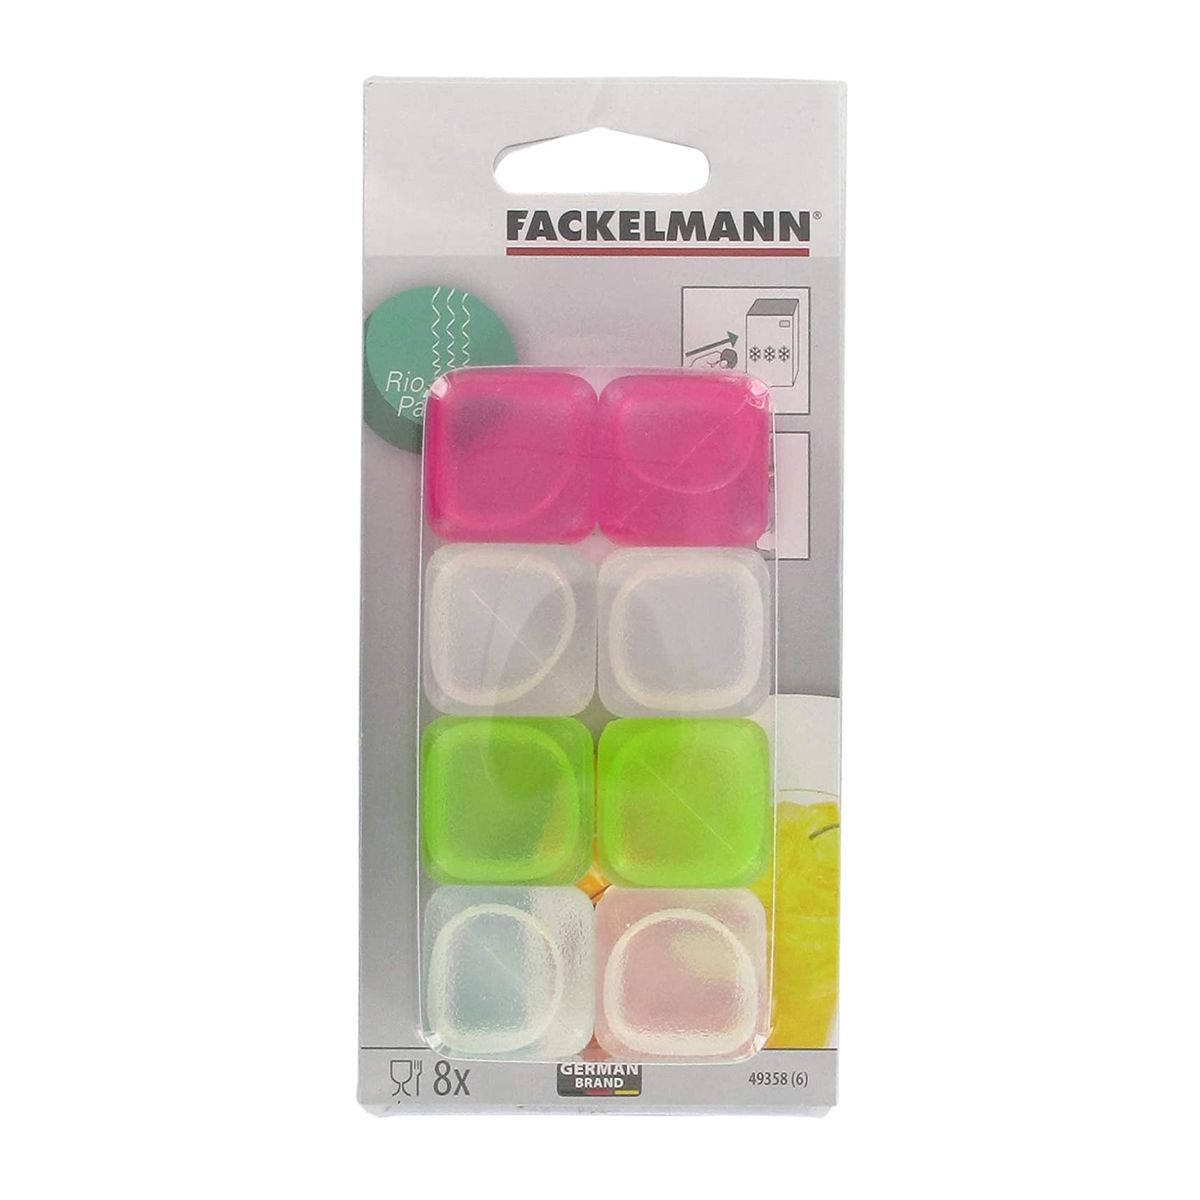 Lot de 8 glaçons réutilisables en plastique Multicolore Fackelmann